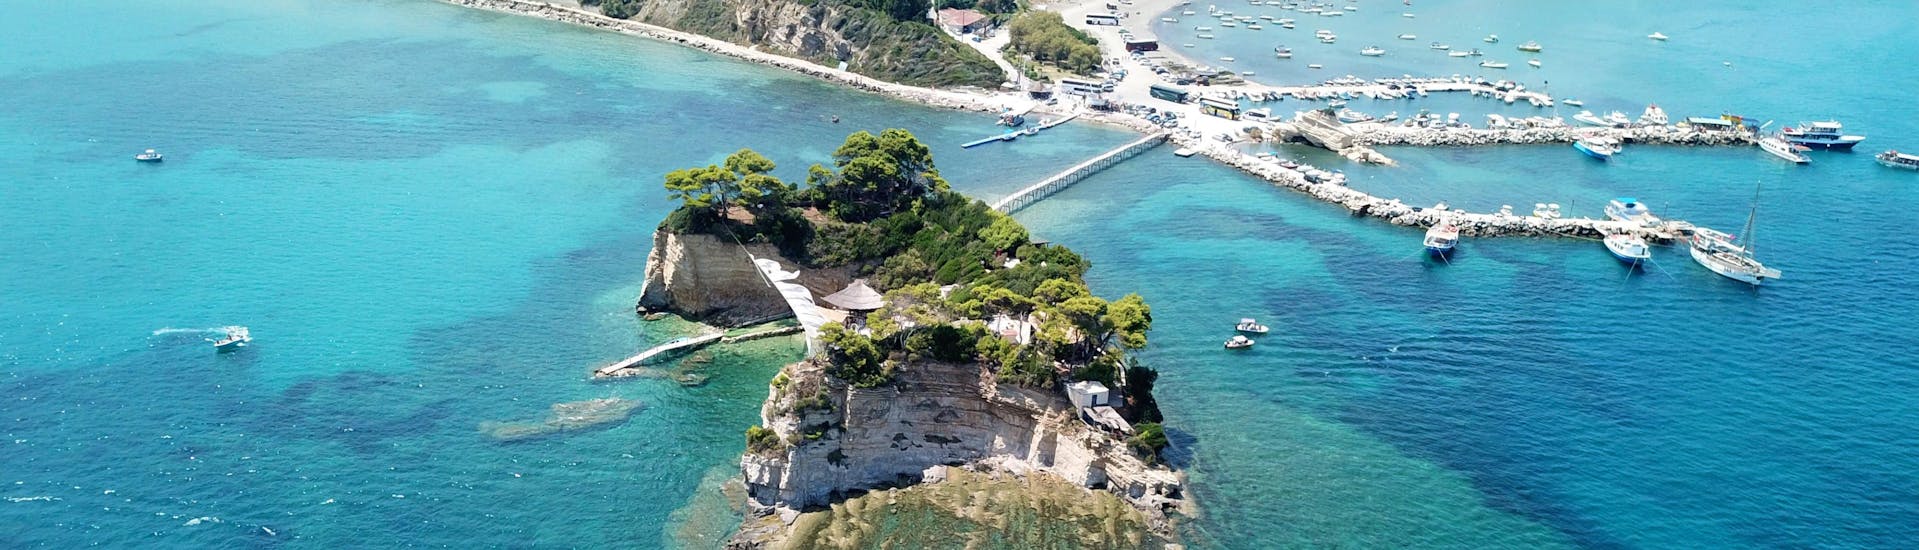 Vue du haut de la baie de Laganas, Zakynthos, avec le pont en bois vers l'île de Cameo. 